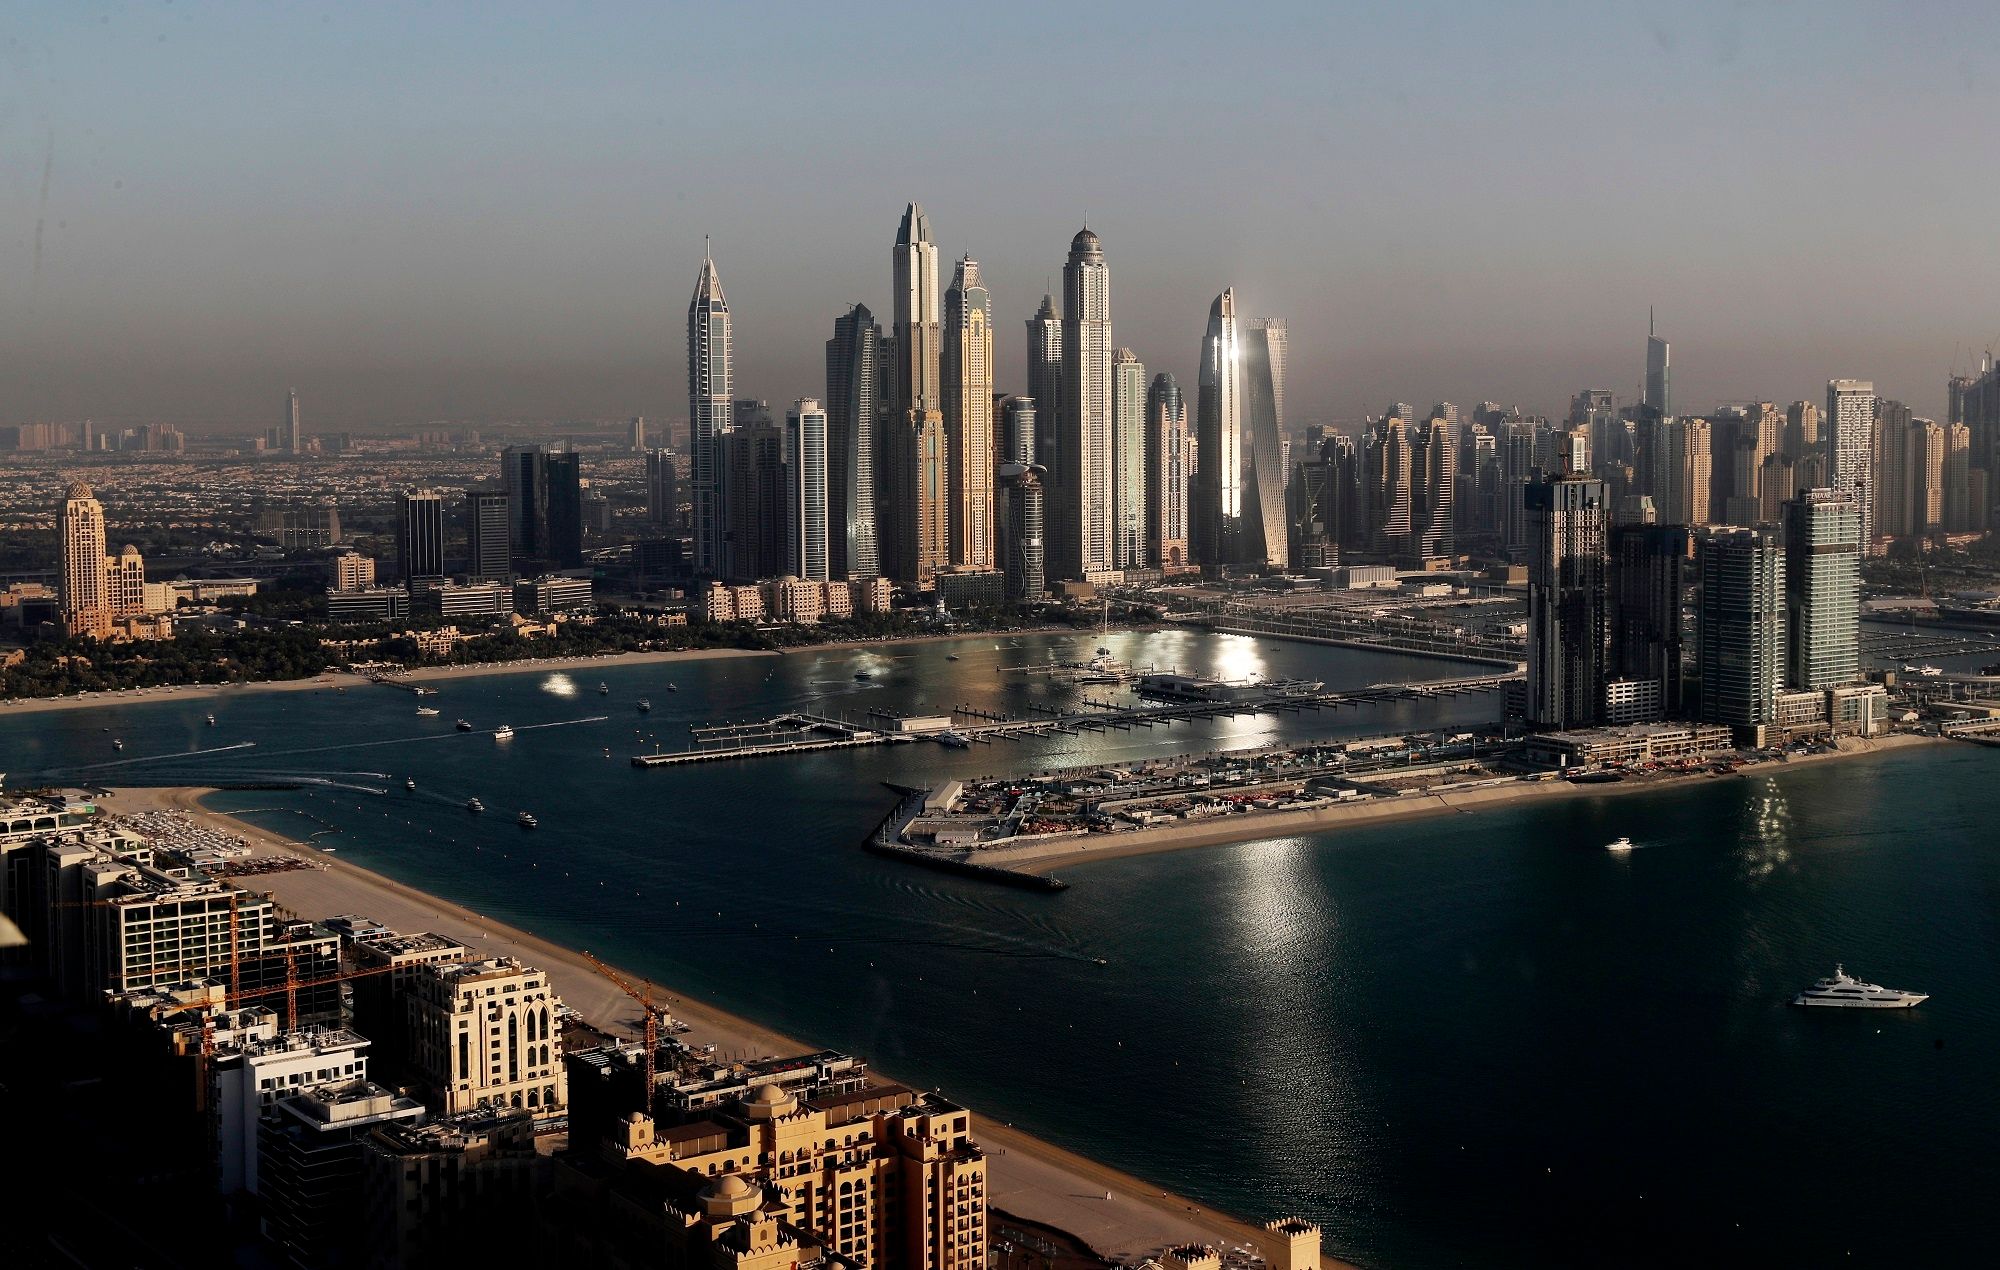 تم شراء قطعة أرض من الرمال في دبي بمبلغ 10 ملايين دولار وأعيد بيعها بربح 242٪.